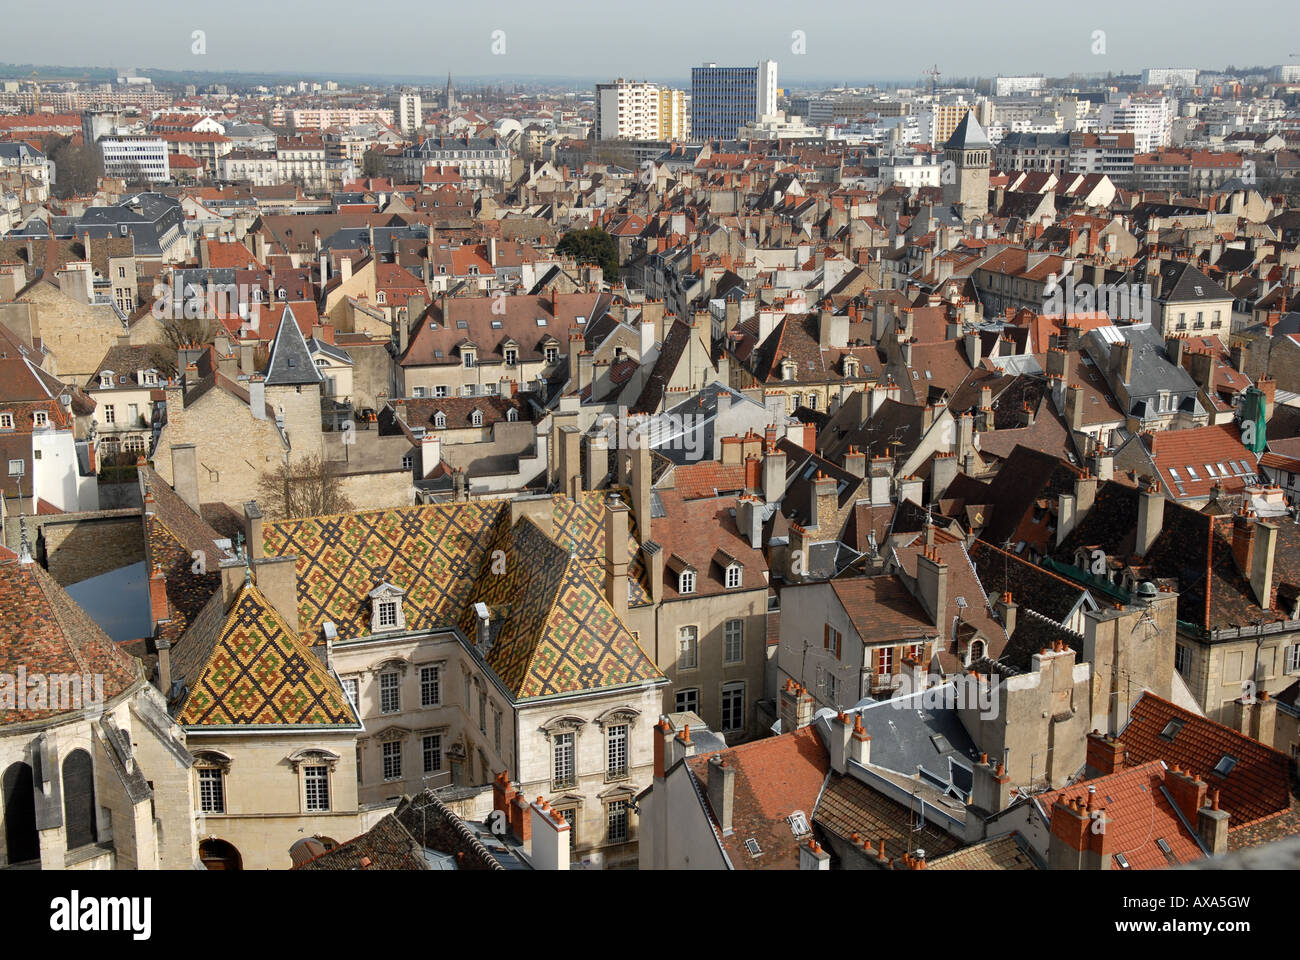 Un toit à tuiles vernissées à Dijon Bourgogne France Banque D'Images